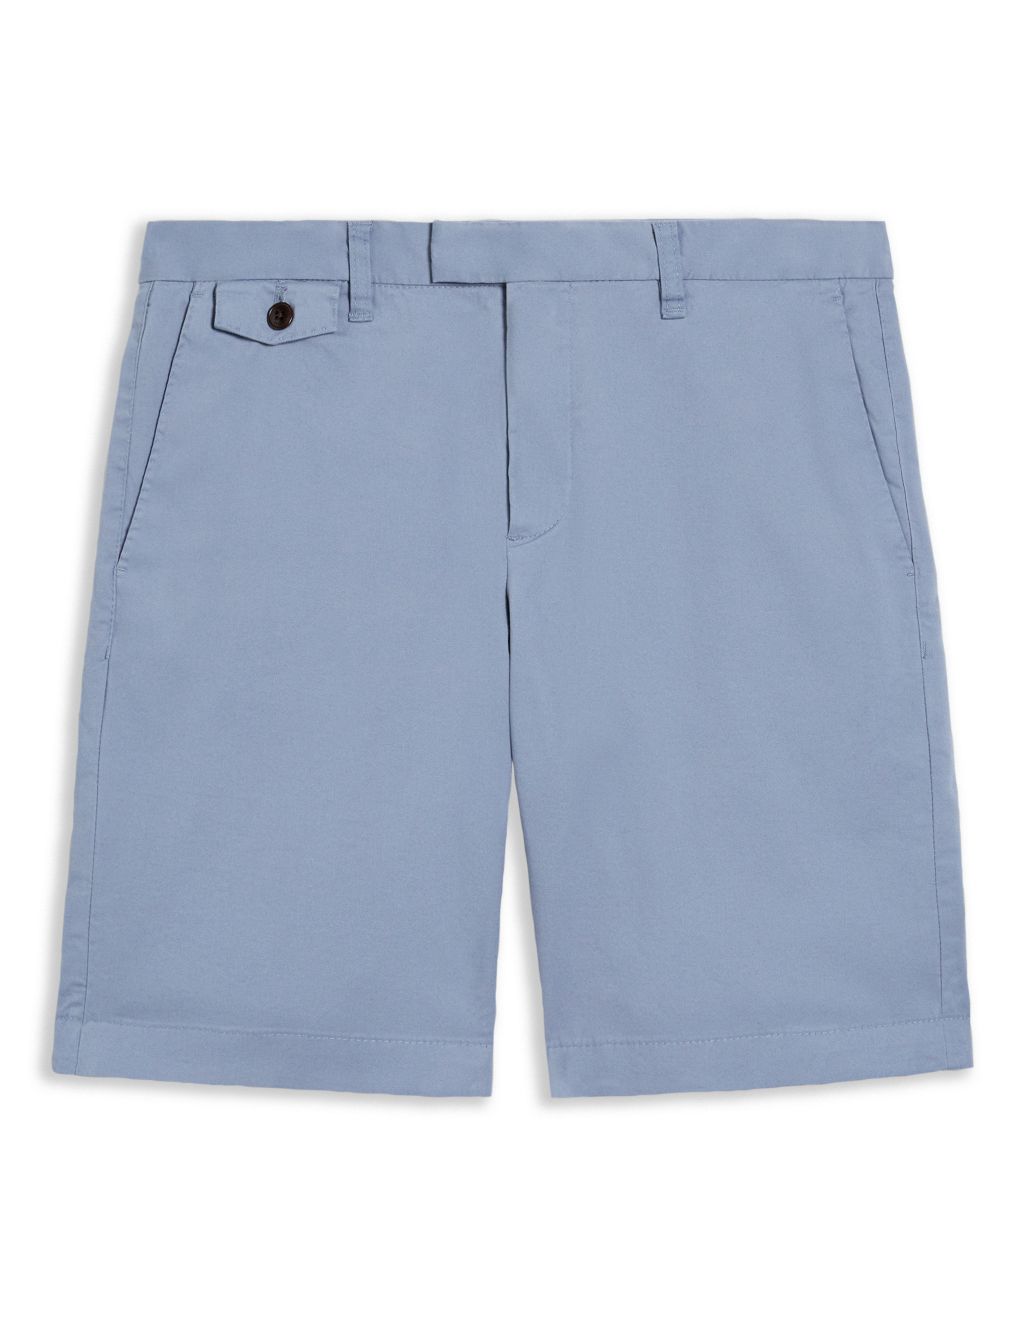 5 Pocket Chino Shorts image 2